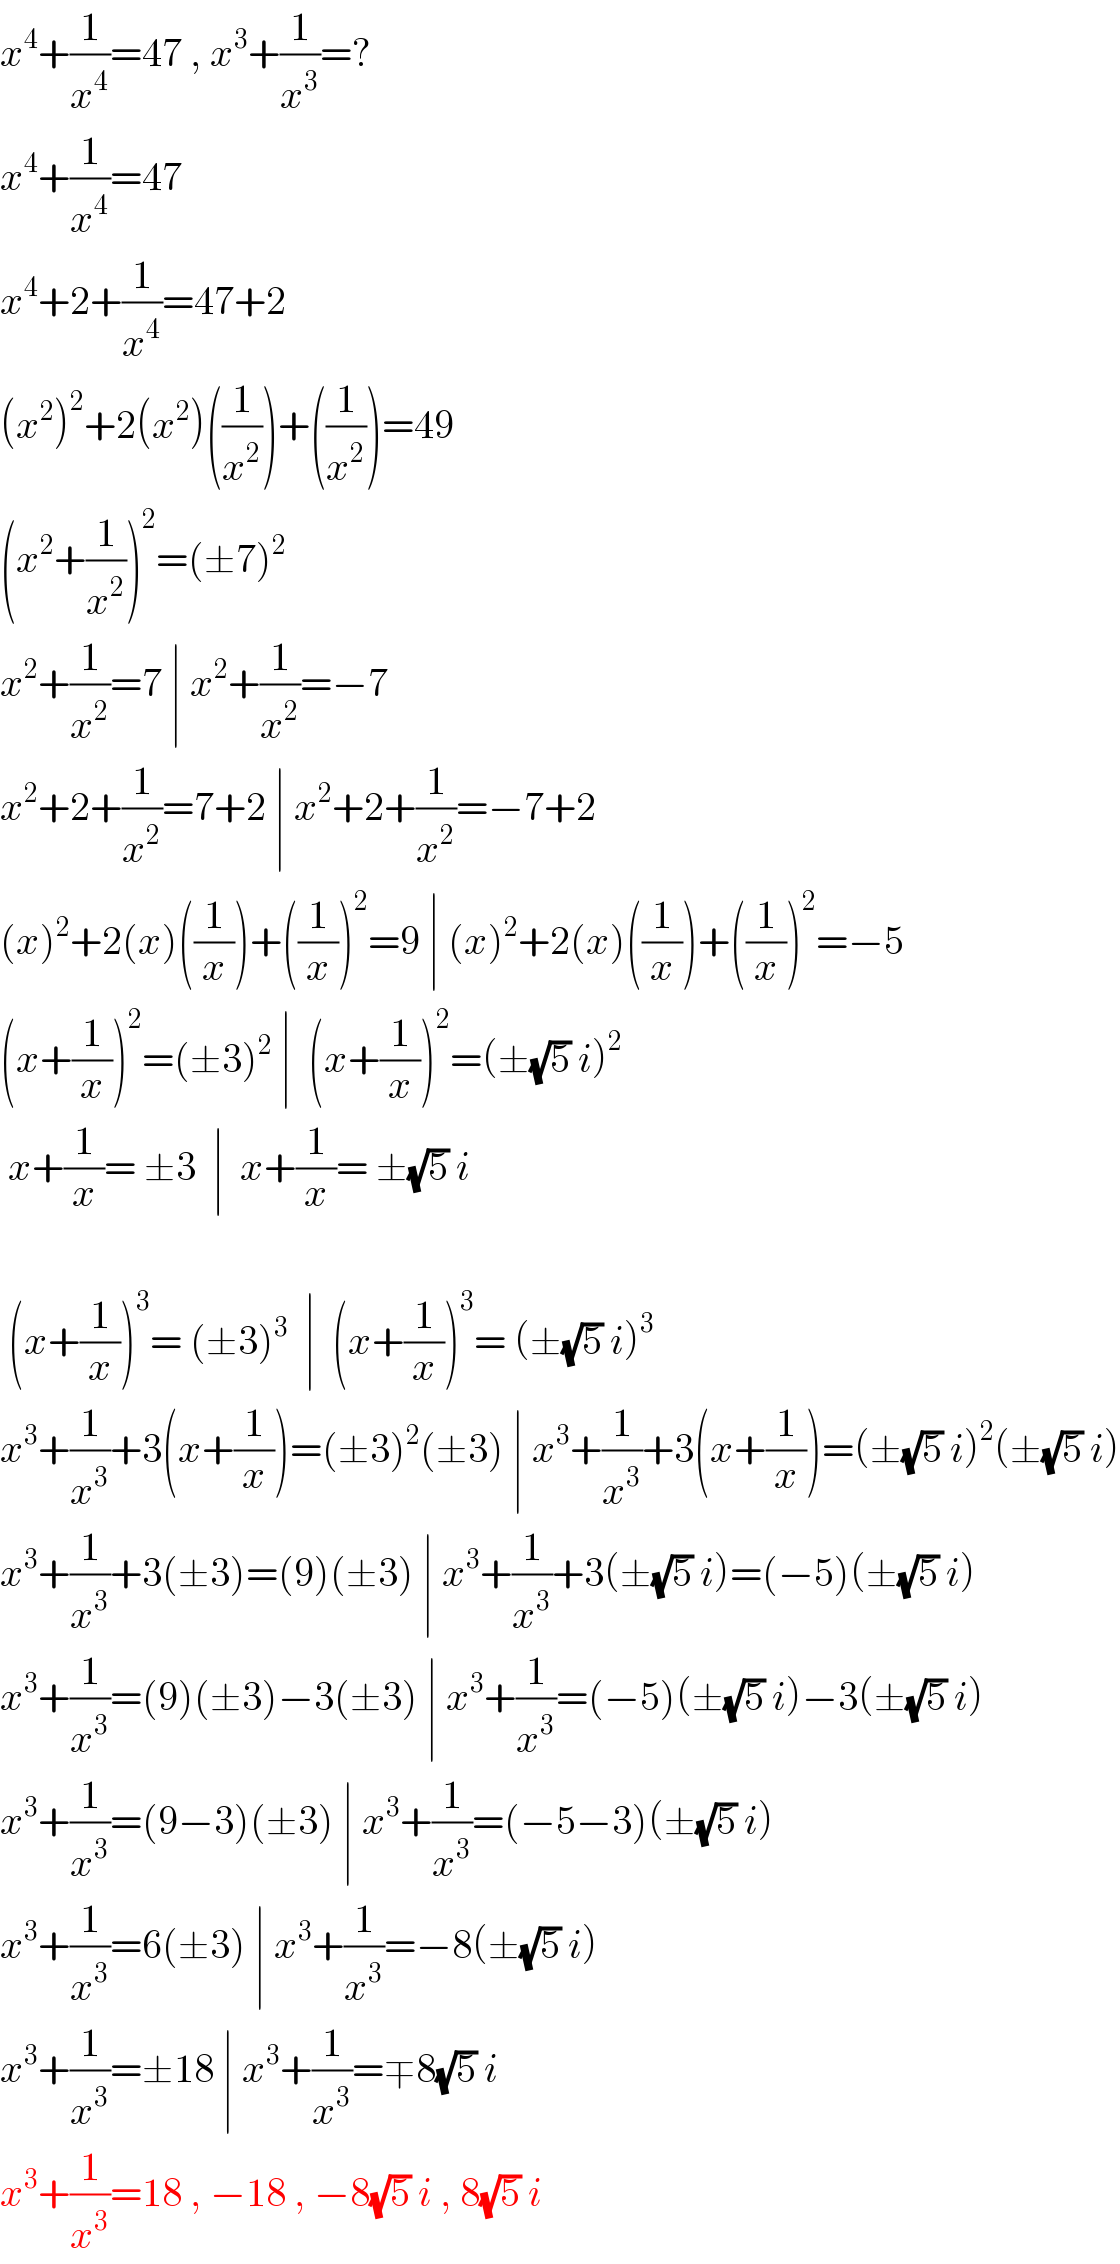 x^4 +(1/x^4 )=47 , x^3 +(1/x^3 )=?  x^4 +(1/x^4 )=47  x^4 +2+(1/x^4 )=47+2  (x^2 )^2 +2(x^2 )((1/x^2 ))+((1/x^2 ))=49  (x^2 +(1/x^2 ))^2 =(±7)^2   x^2 +(1/x^2 )=7 ∣ x^2 +(1/x^2 )=−7  x^2 +2+(1/x^2 )=7+2 ∣ x^2 +2+(1/x^2 )=−7+2  (x)^2 +2(x)((1/x))+((1/x))^2 =9 ∣ (x)^2 +2(x)((1/x))+((1/x))^2 =−5  (x+(1/x))^2 =(±3)^2  ∣  (x+(1/x))^2 =(±(√5) i)^2    x+(1/x)= ±3  ∣  x+(1/x)= ±(√5) i     (x+(1/x))^3 = (±3)^3   ∣  (x+(1/x))^3 = (±(√5) i)^3   x^3 +(1/x^3 )+3(x+(1/x))=(±3)^2 (±3) ∣ x^3 +(1/x^3 )+3(x+(1/x))=(±(√5) i)^2 (±(√5) i)  x^3 +(1/x^3 )+3(±3)=(9)(±3) ∣ x^3 +(1/x^3 )+3(±(√5) i)=(−5)(±(√5) i)  x^3 +(1/x^3 )=(9)(±3)−3(±3) ∣ x^3 +(1/x^3 )=(−5)(±(√5) i)−3(±(√5) i)  x^3 +(1/x^3 )=(9−3)(±3) ∣ x^3 +(1/x^3 )=(−5−3)(±(√5) i)  x^3 +(1/x^3 )=6(±3) ∣ x^3 +(1/x^3 )=−8(±(√5) i)  x^3 +(1/x^3 )=±18 ∣ x^3 +(1/x^3 )=∓8(√5) i  x^3 +(1/x^3 )=18 , −18 , −8(√5) i , 8(√5) i  